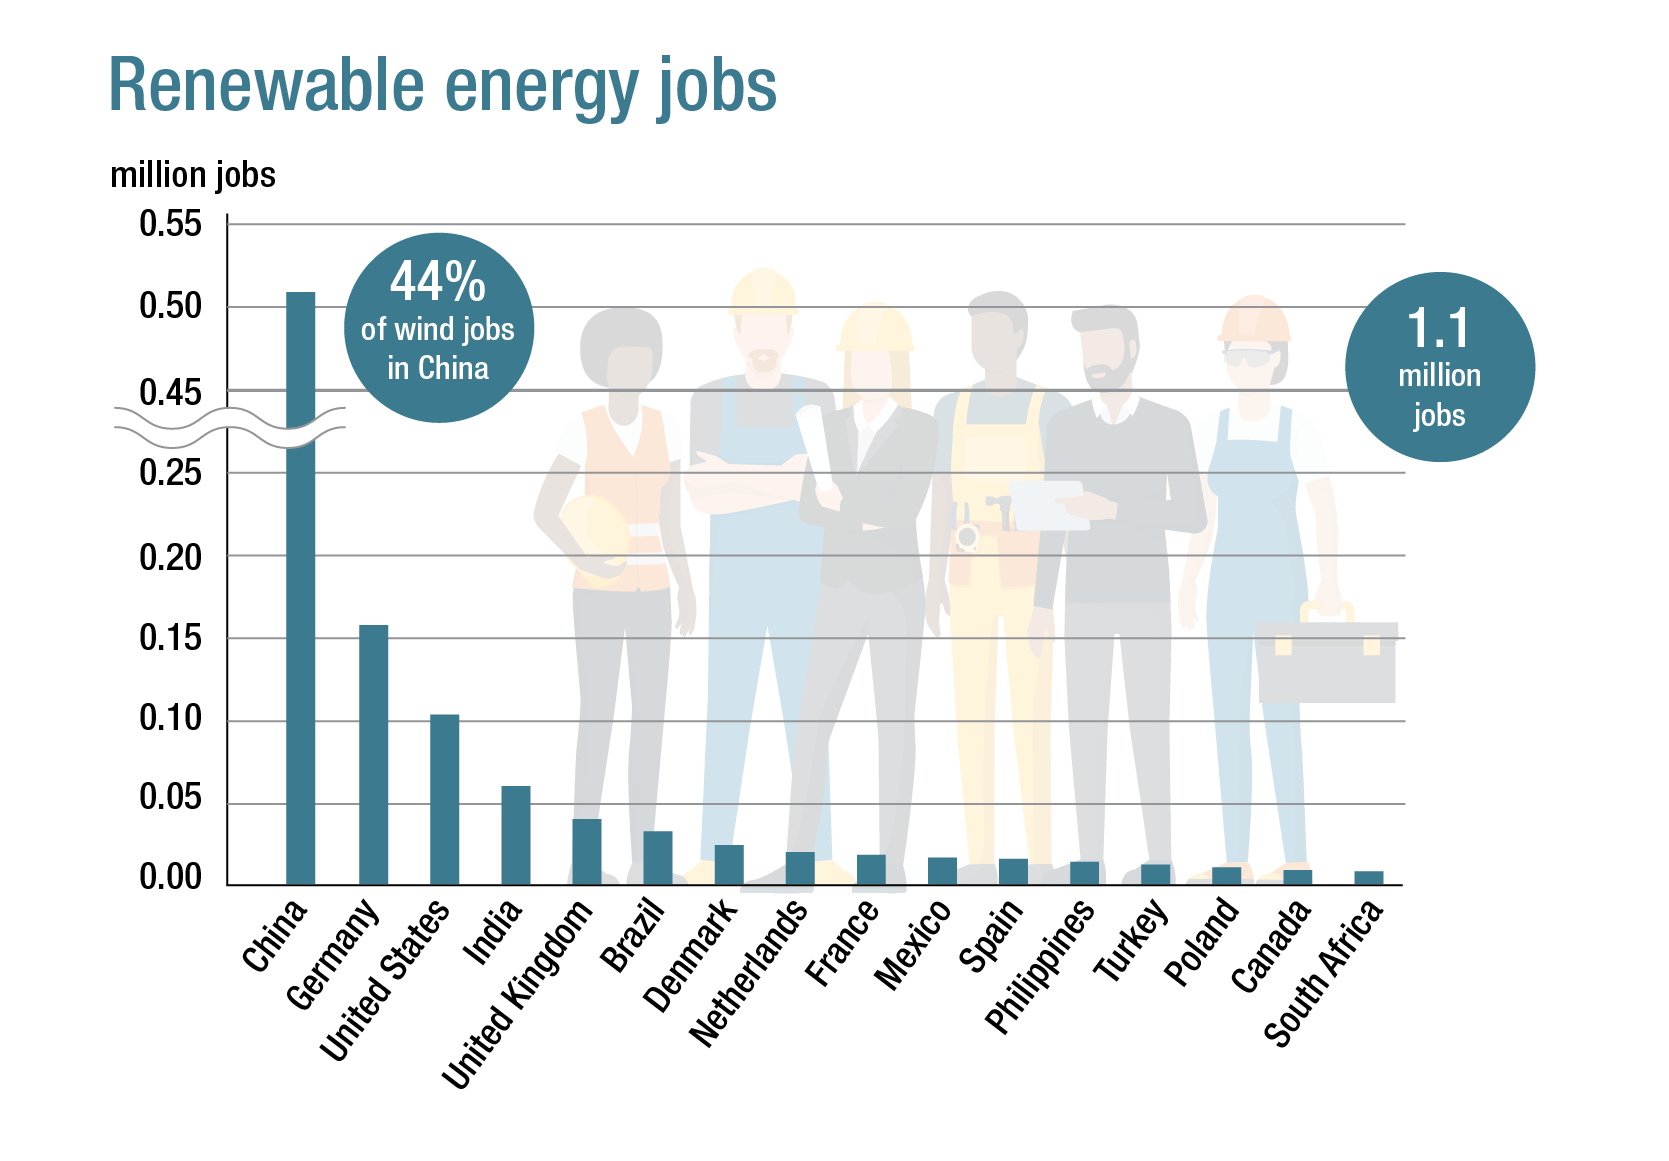 Empregos em energia renovável em todo o mundo